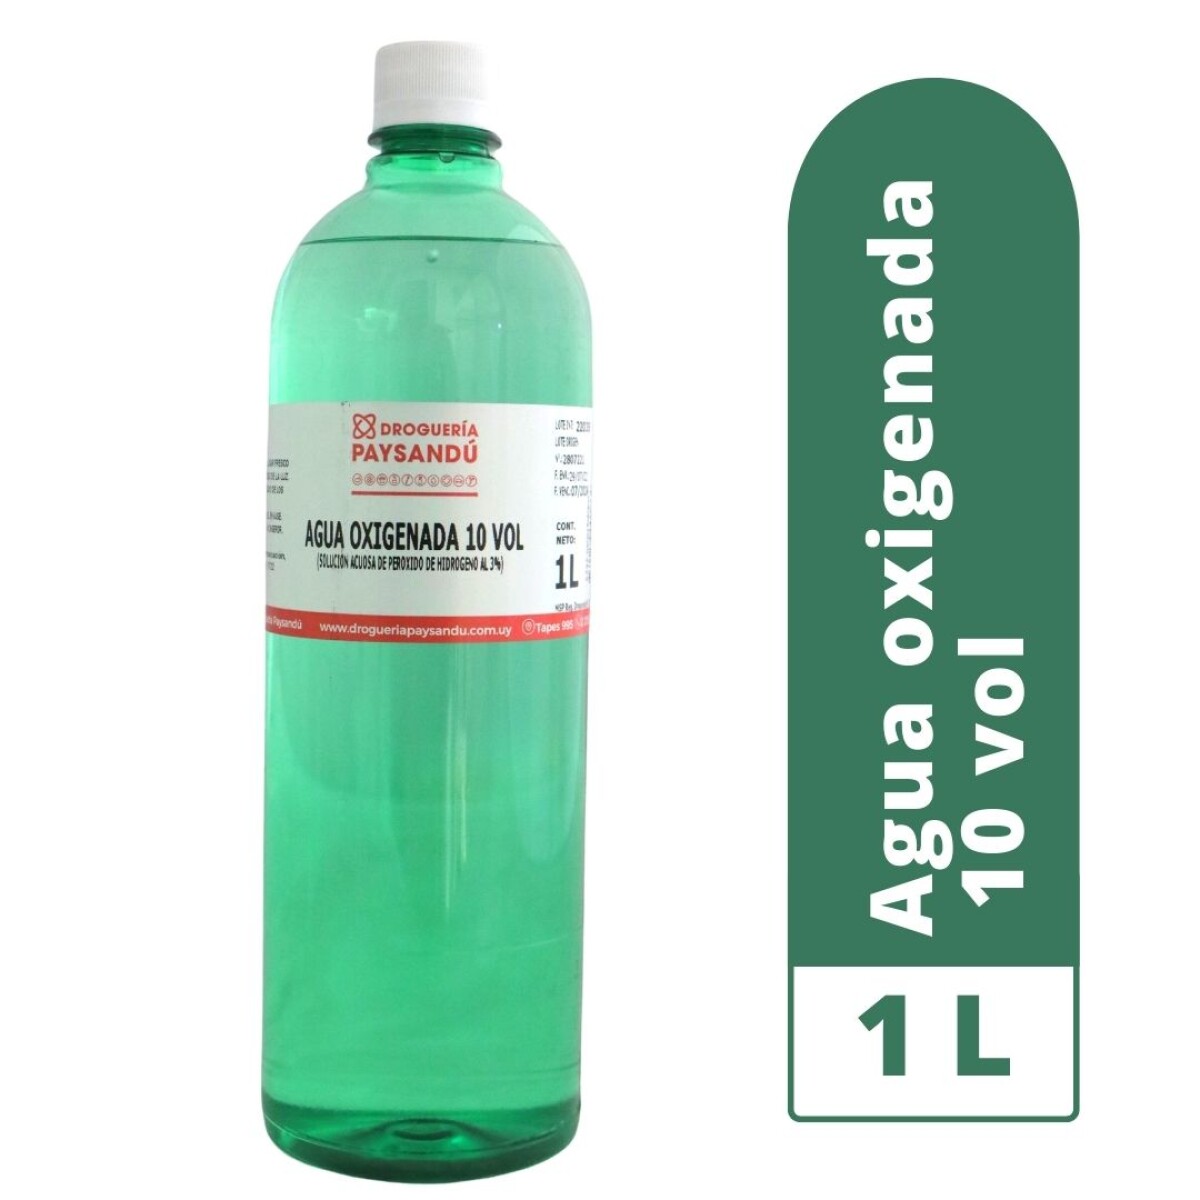 Agua Oxigenada 10 Vol. - 1 L 